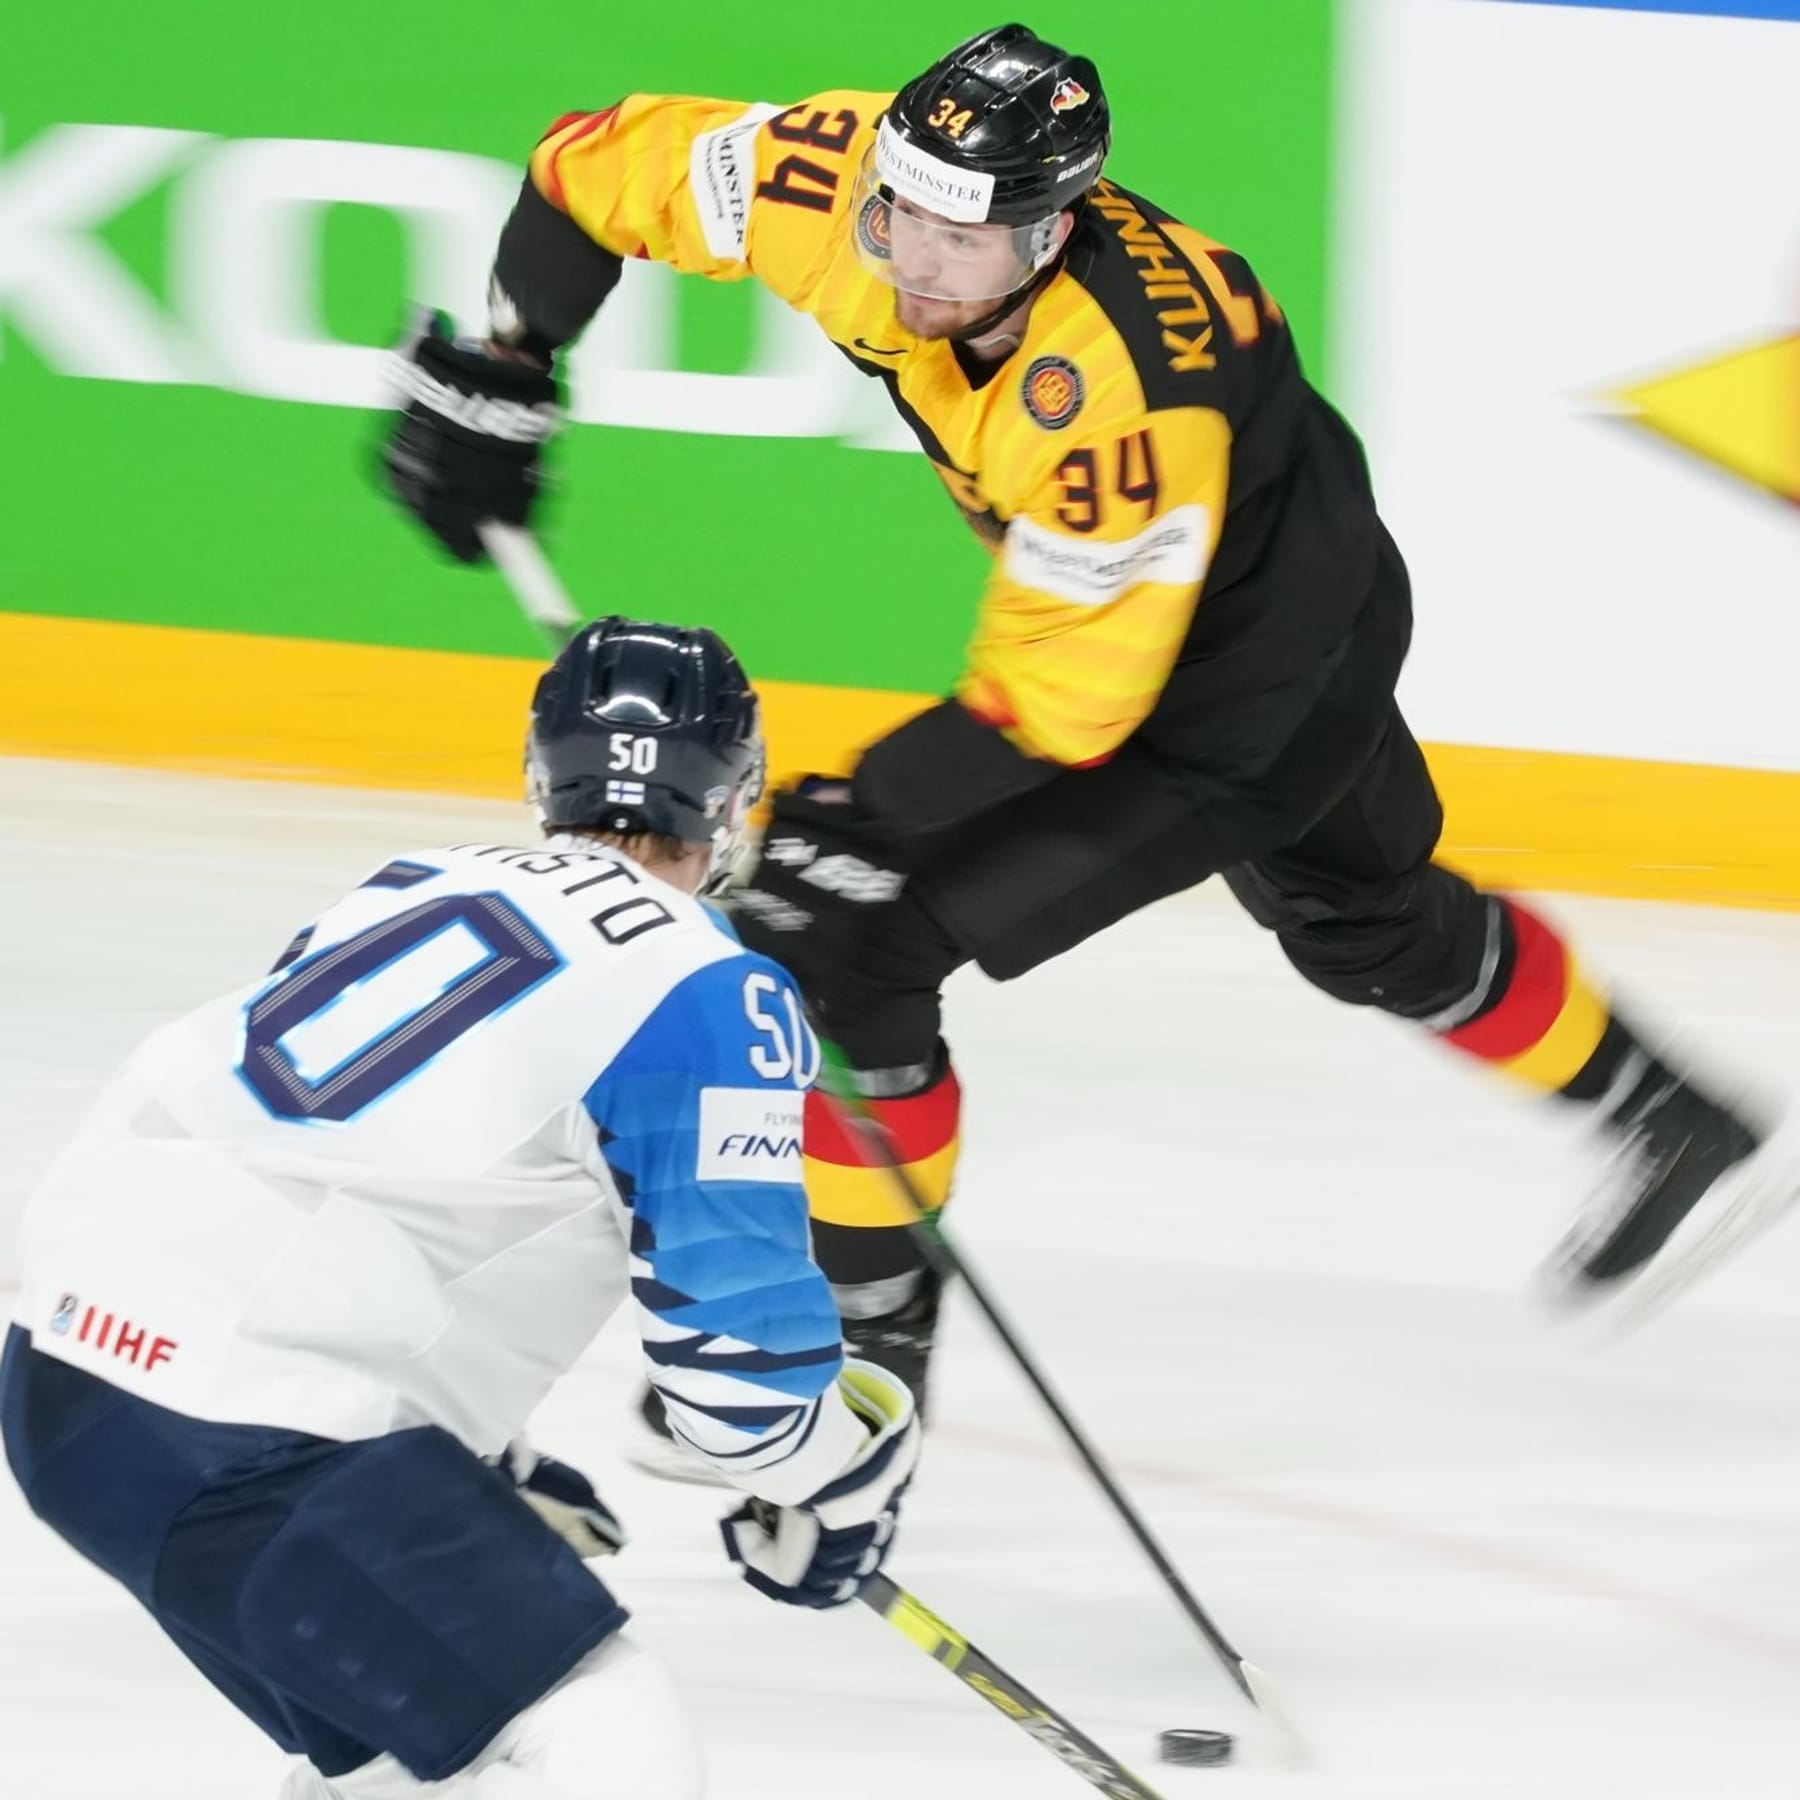 Eishockey Wechsel zu Adlern Ex-NHL-Stürmer für Nationalteam bereit